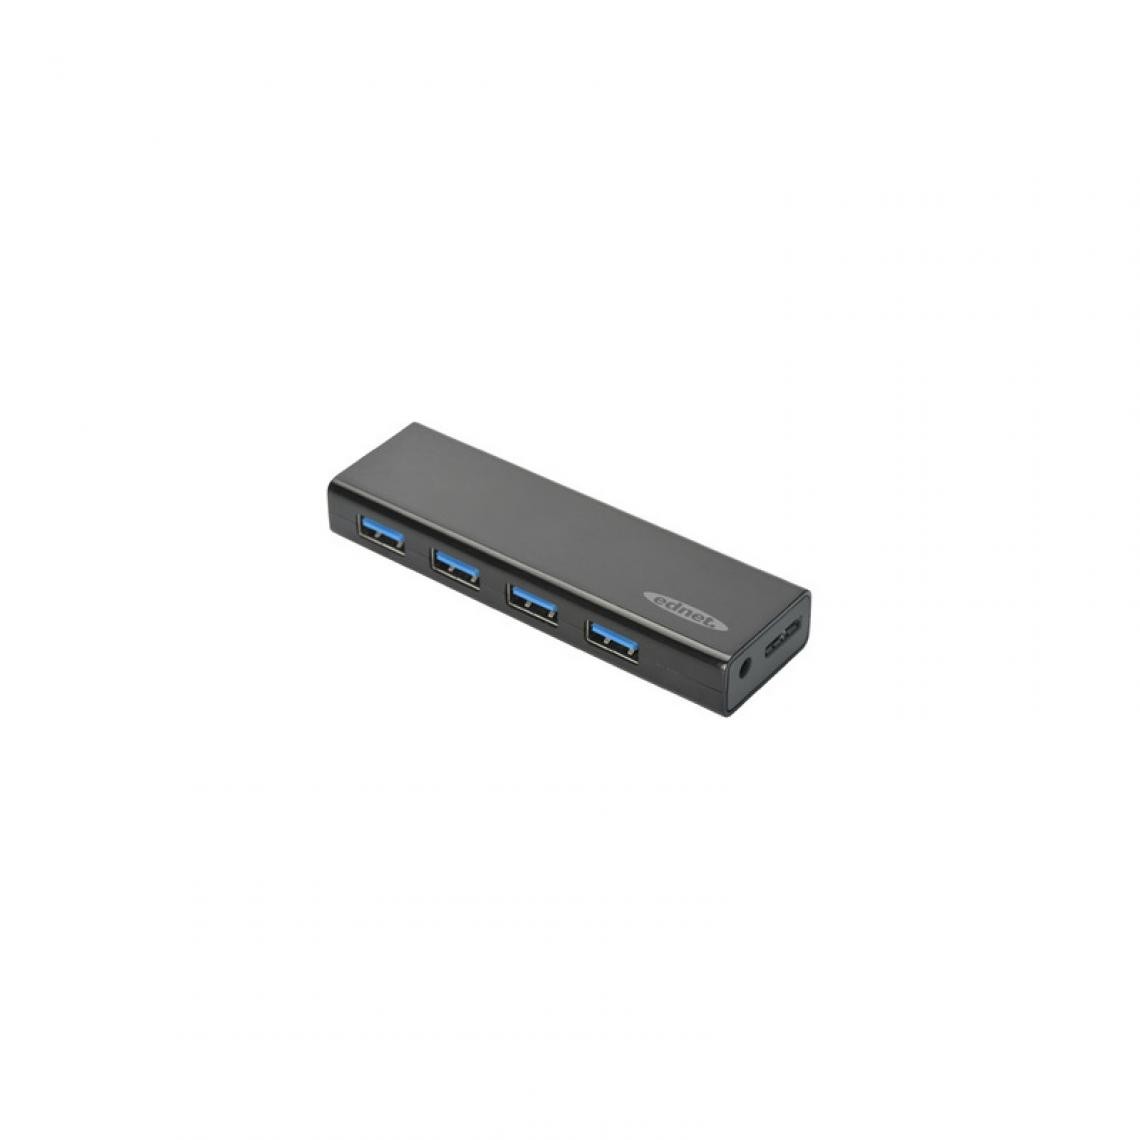 Ednet - ednet Hub USB 3.0, 4 ports, noir () - Hub